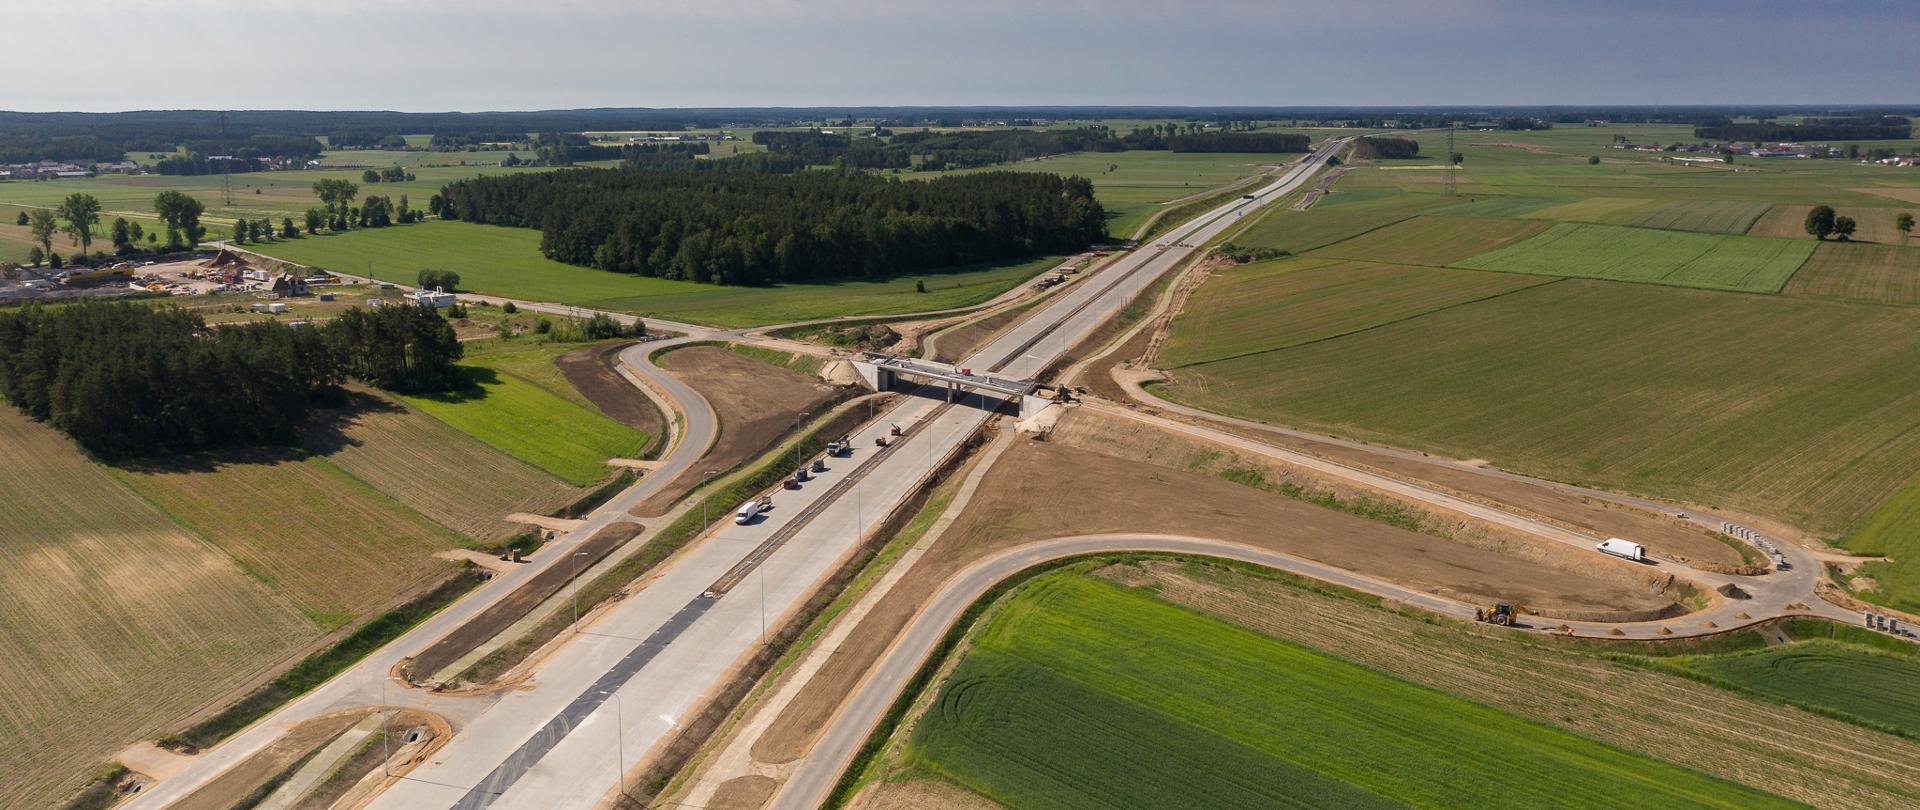 Budowa drogi ekspresowej S61 Łomża Południe - Łomża Zachód. W tle widać zabudowania, pola uprawne oraz las.